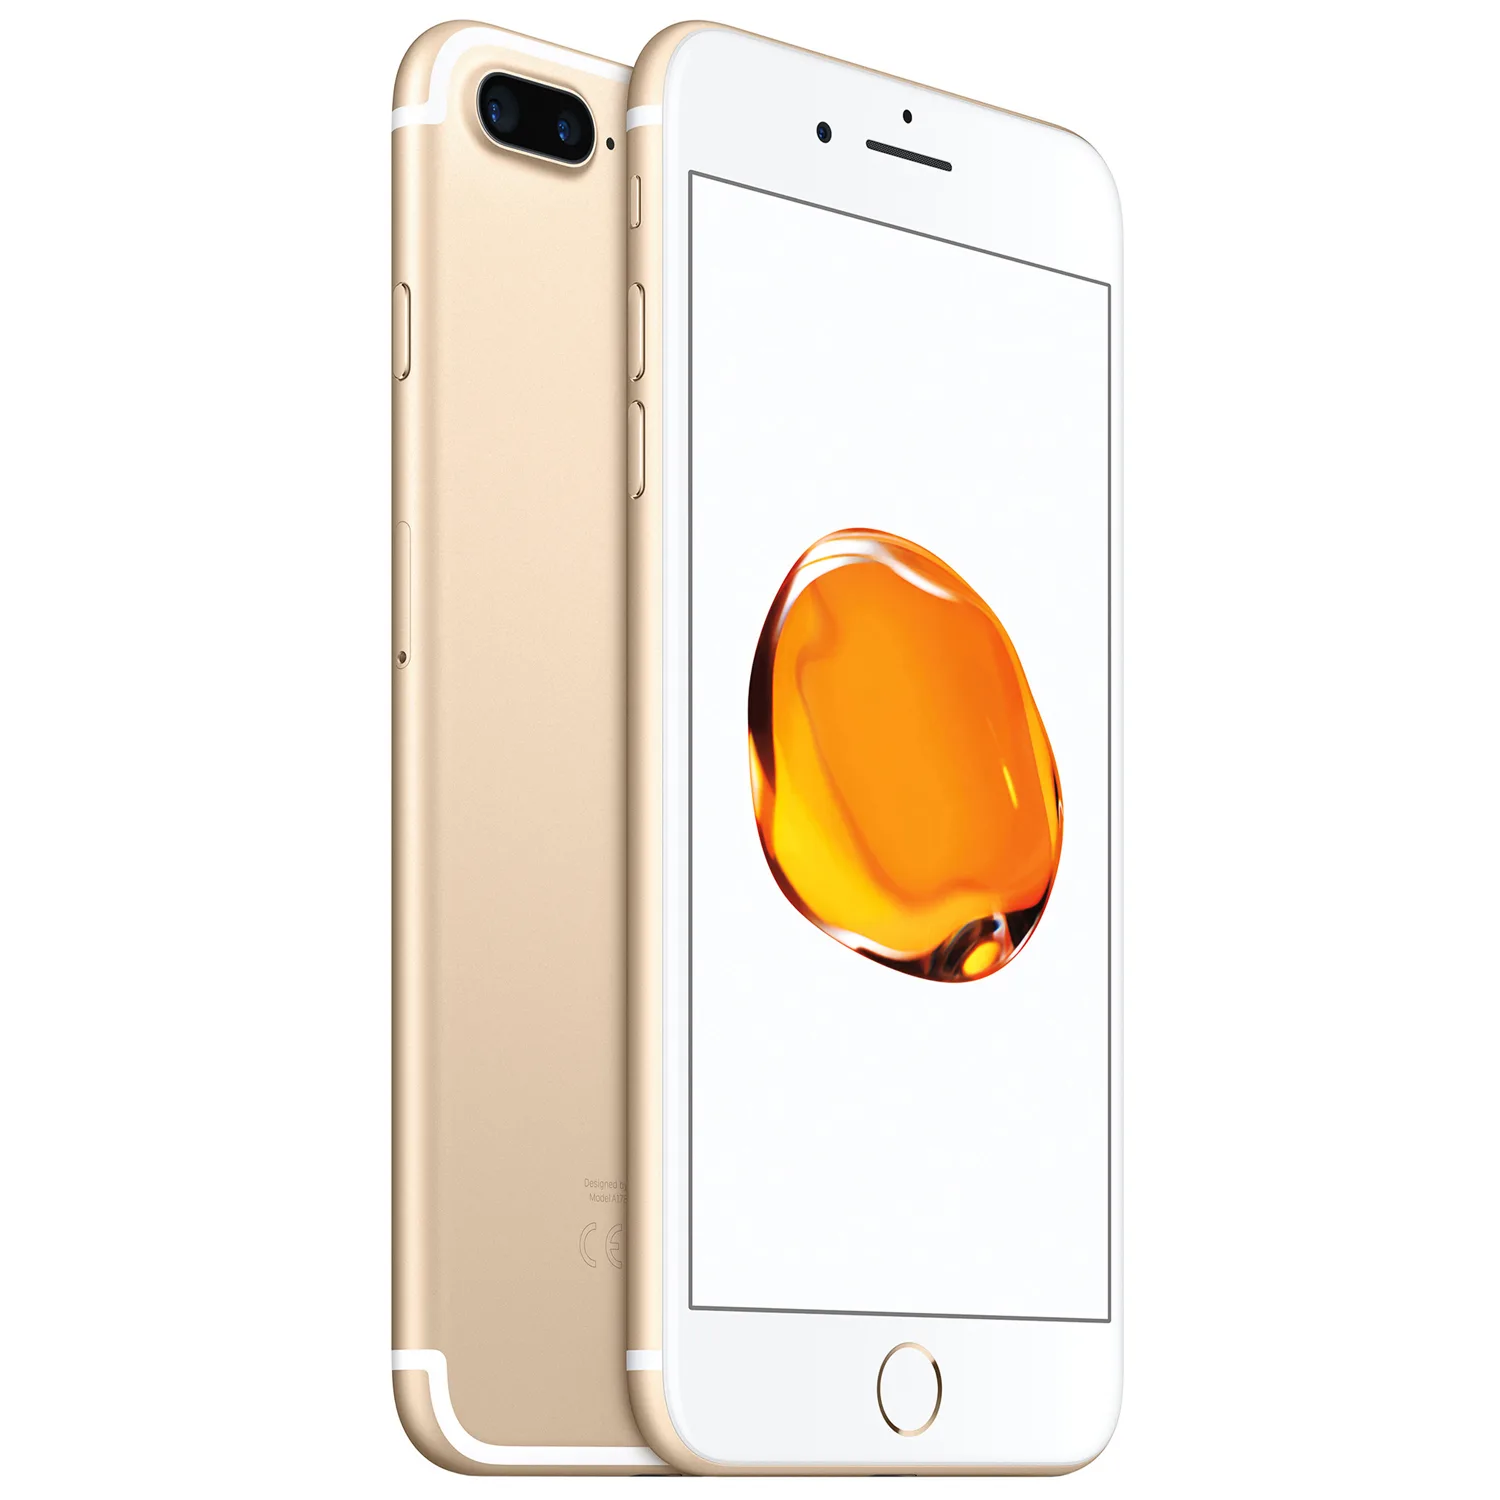 Beide fictie Zachte voeten iPhone 7 Plus 32GB goud kopen? - 2 jaar garantie! | Fixje